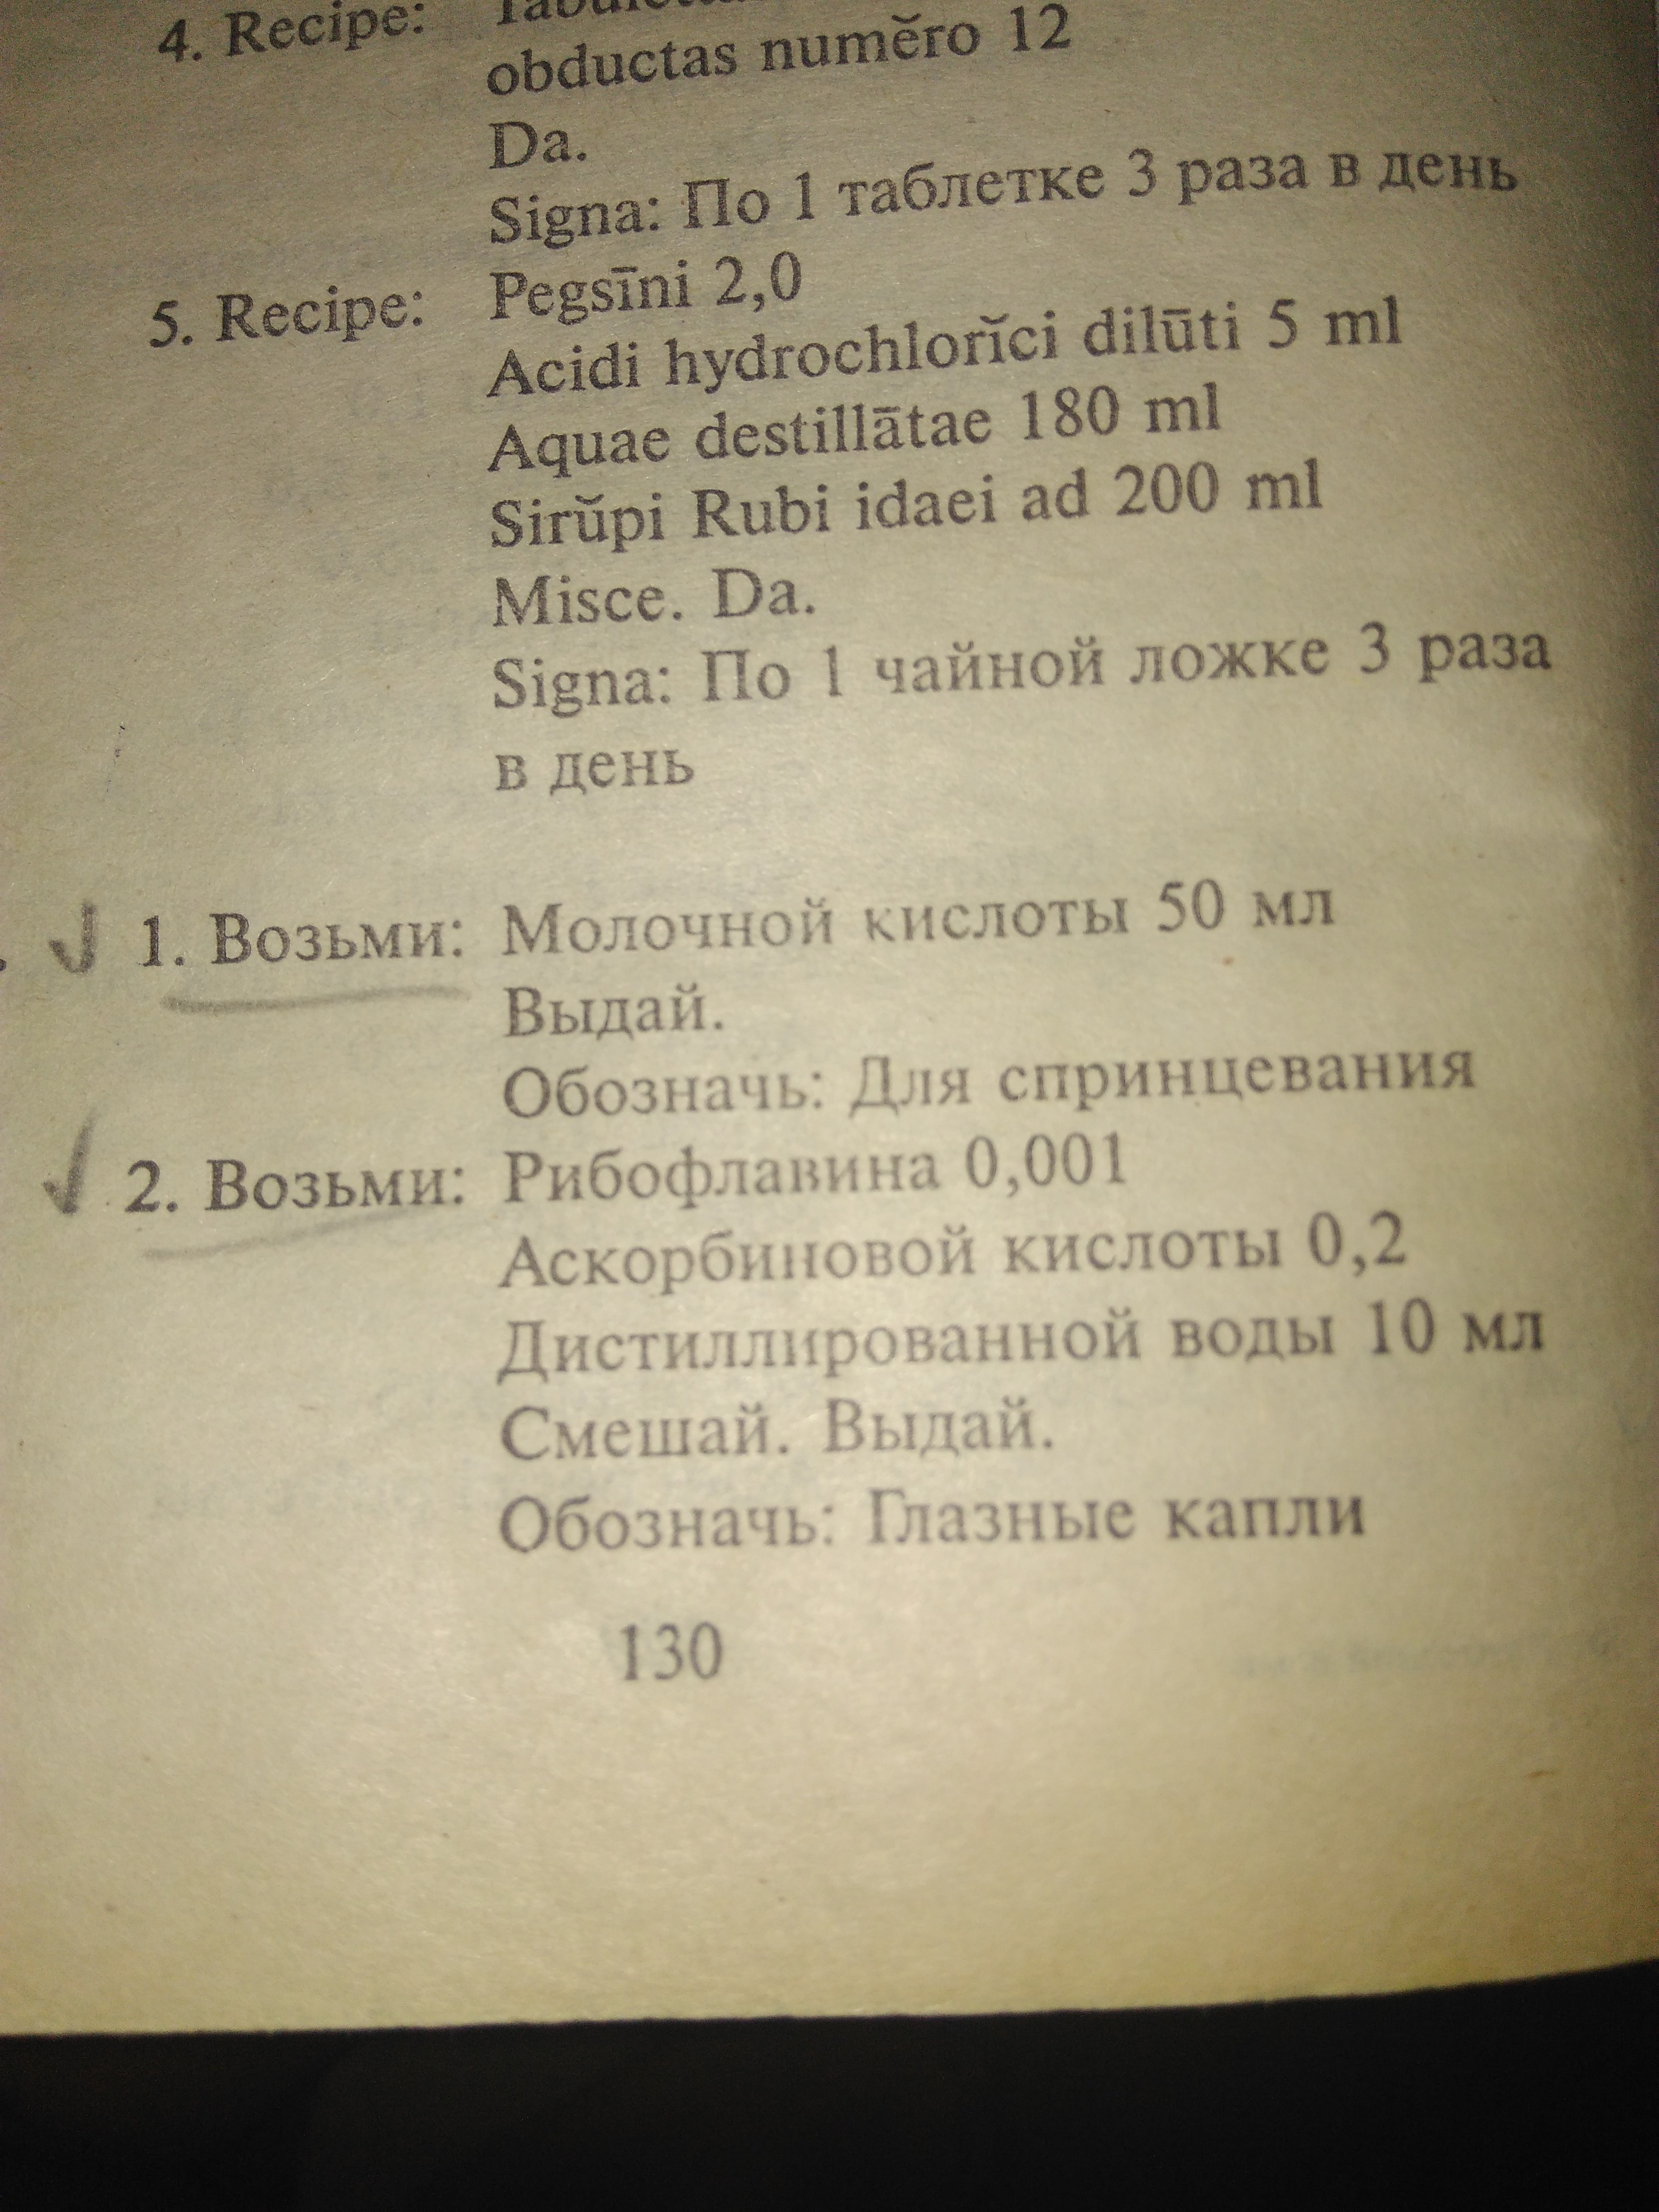 Молочной кислоты на латинском в рецепте